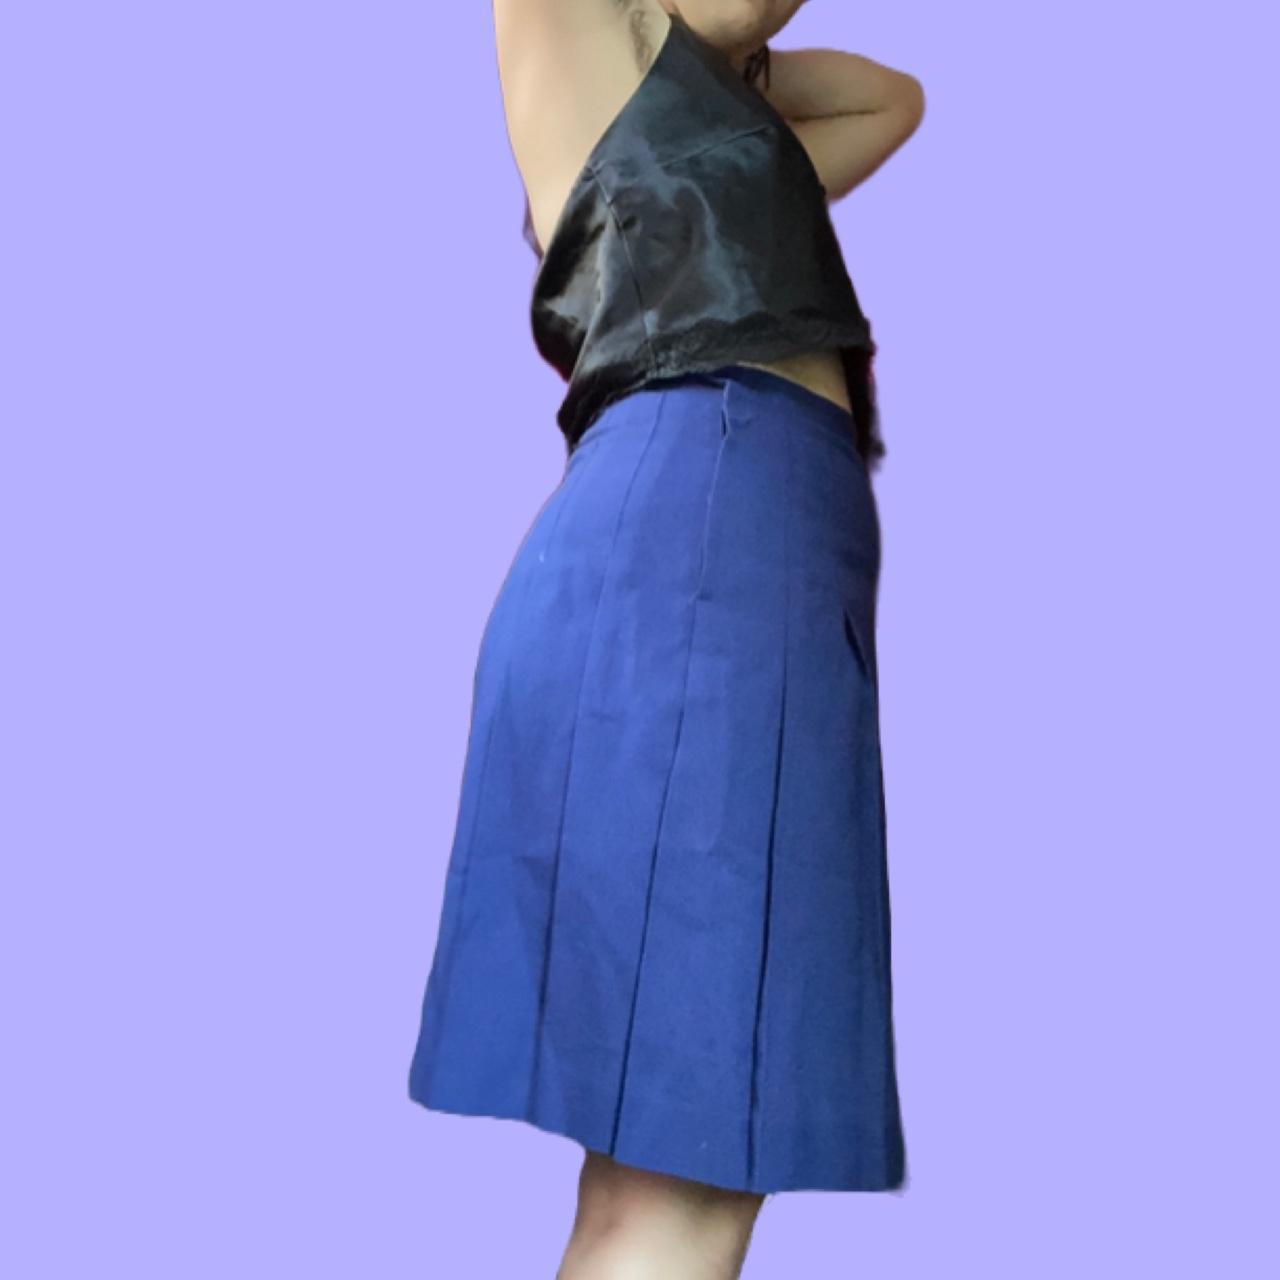 Product Image 2 - 🌚 Grandma pleated midi skirt!